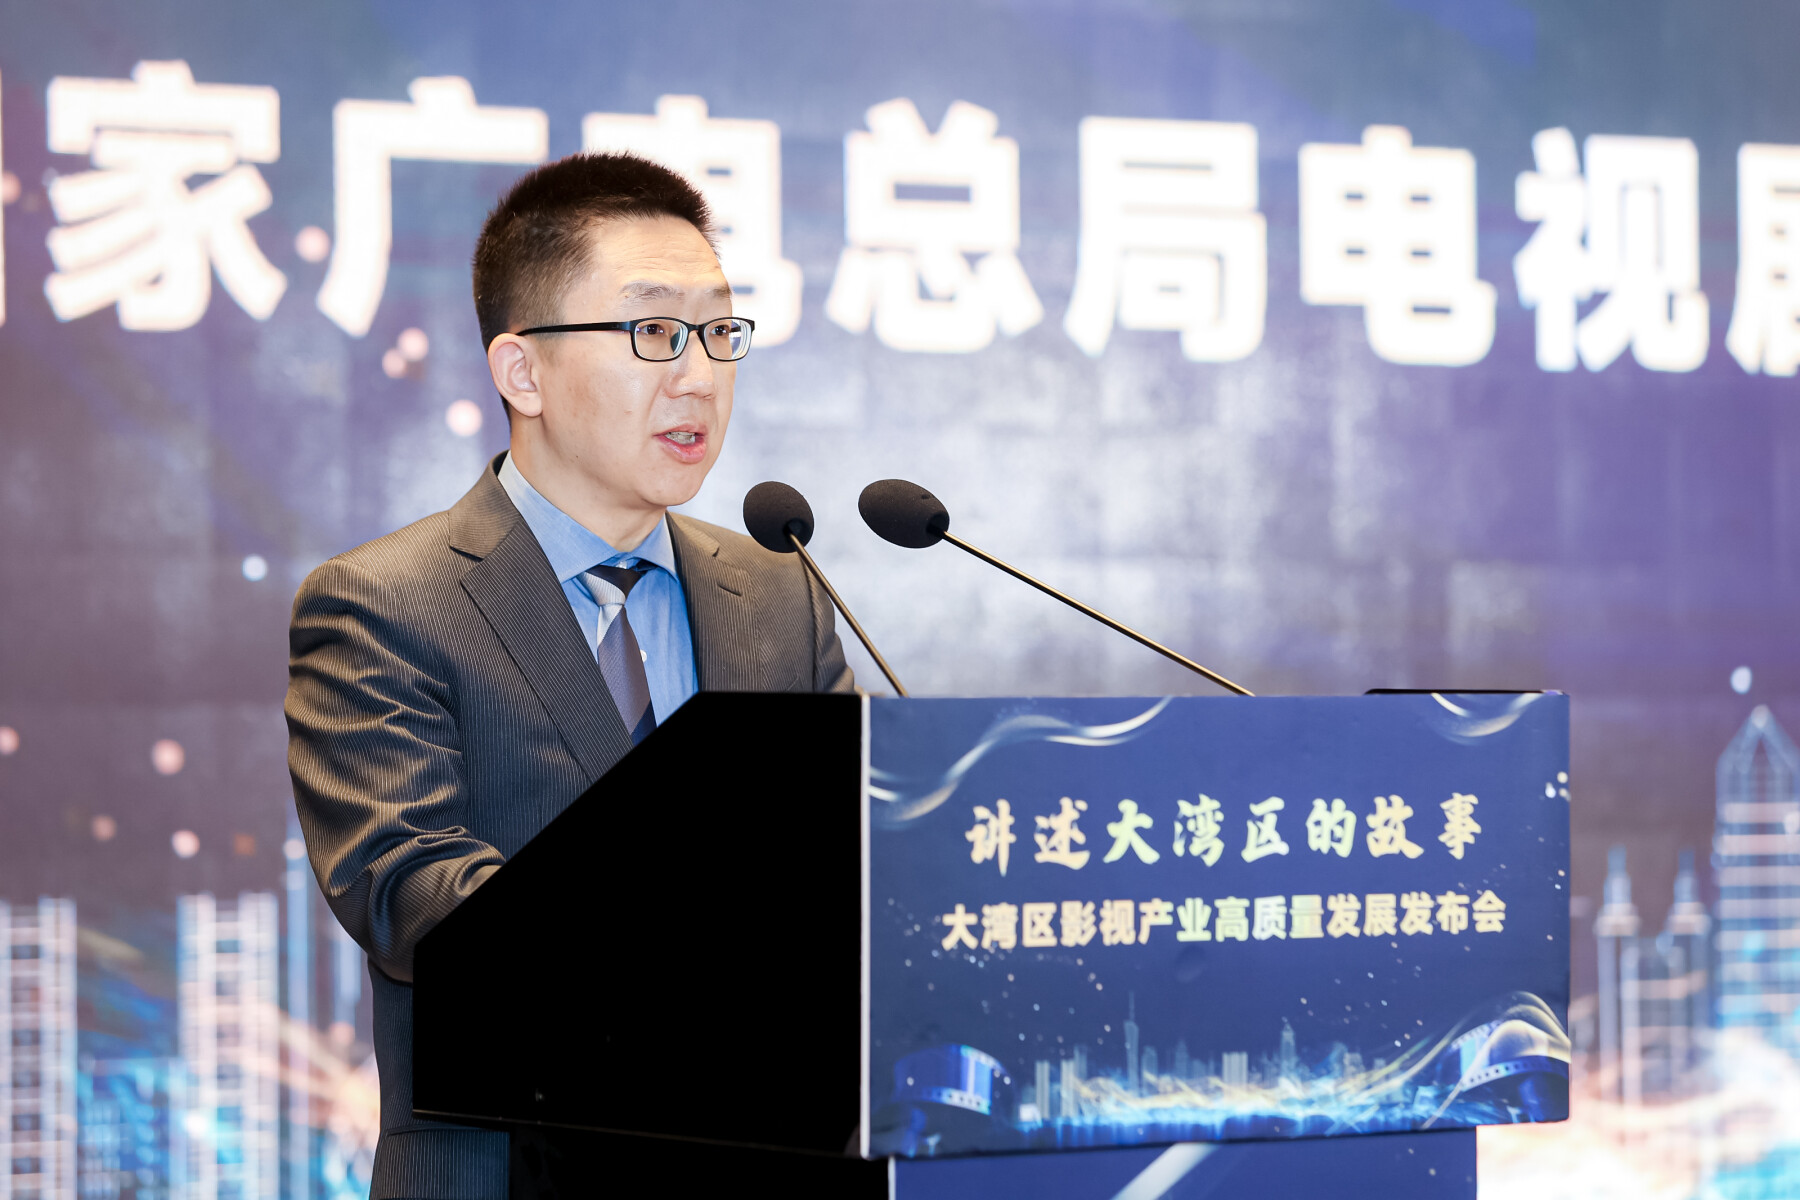 国家广电总局电视剧司副司长刘文峰。